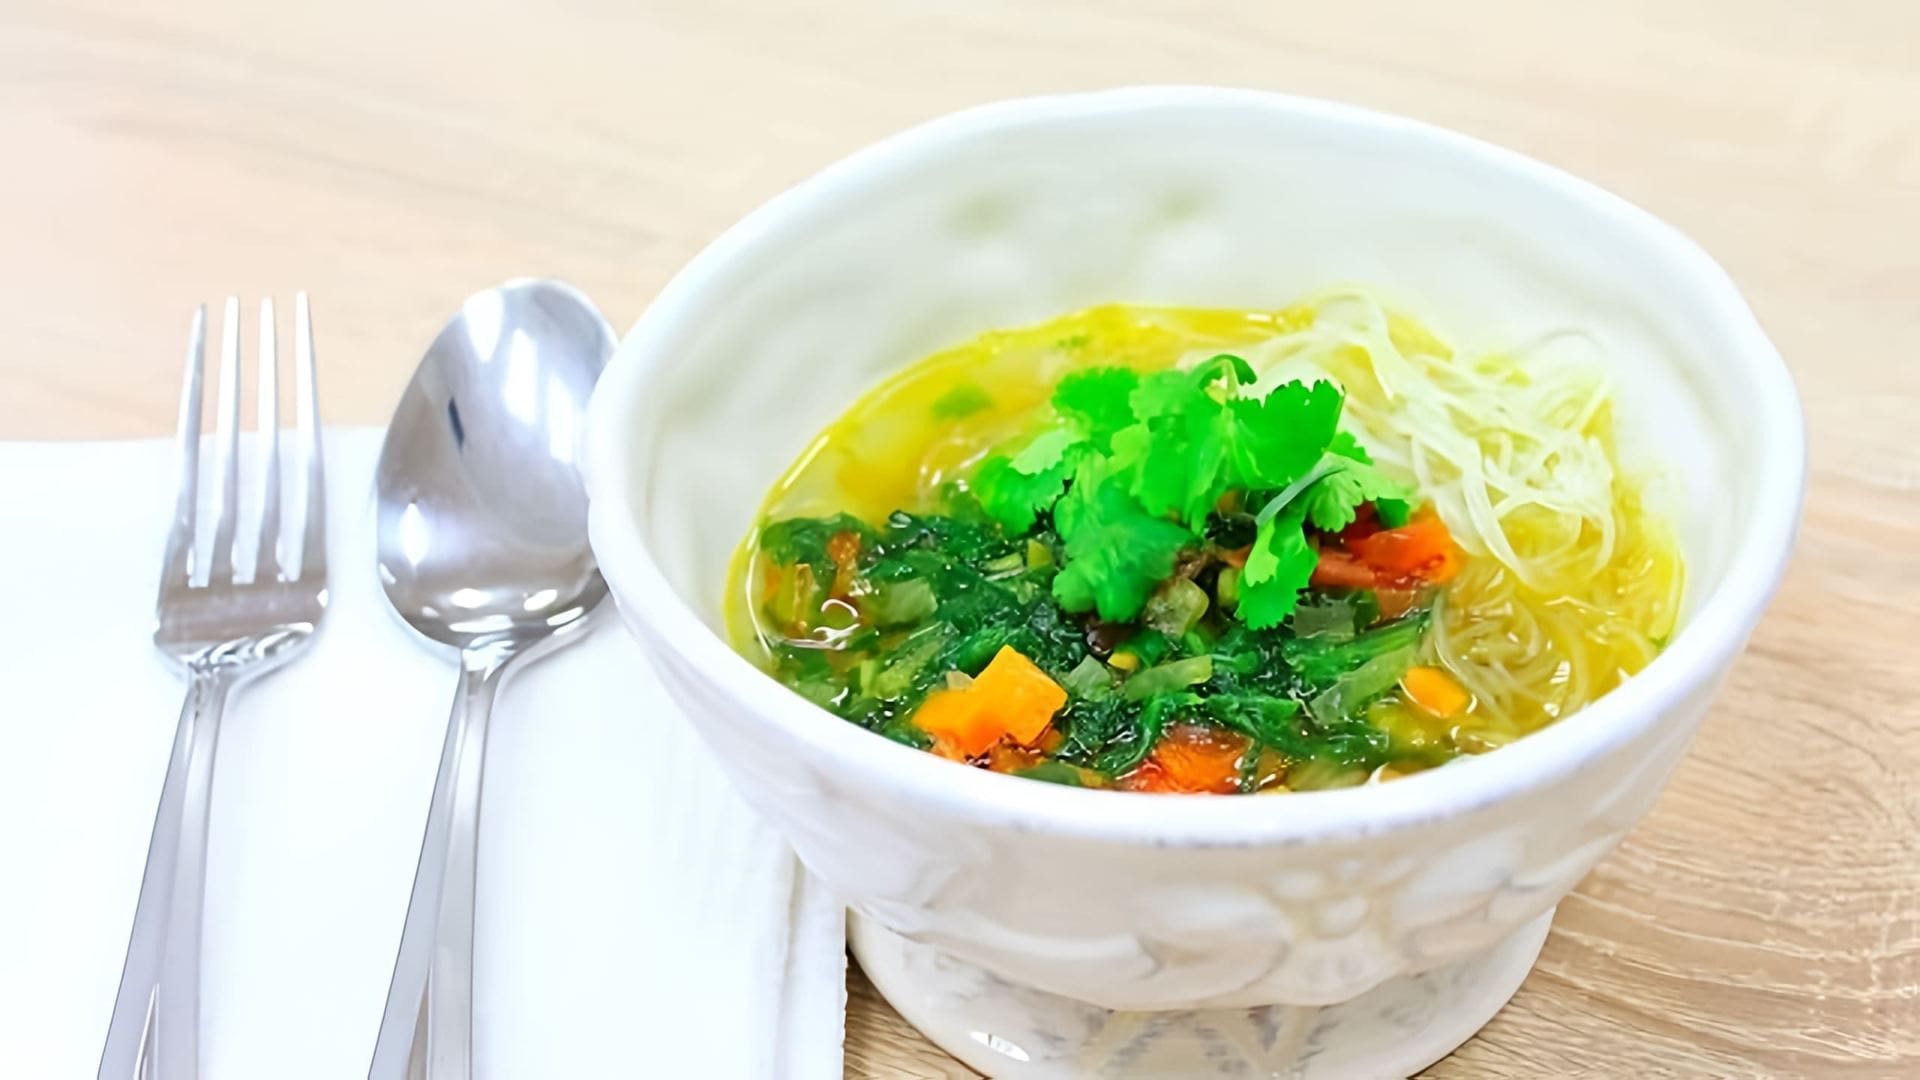 В этом видео демонстрируется процесс приготовления куриного супа с овощами и рисовой лапшой фунчозы